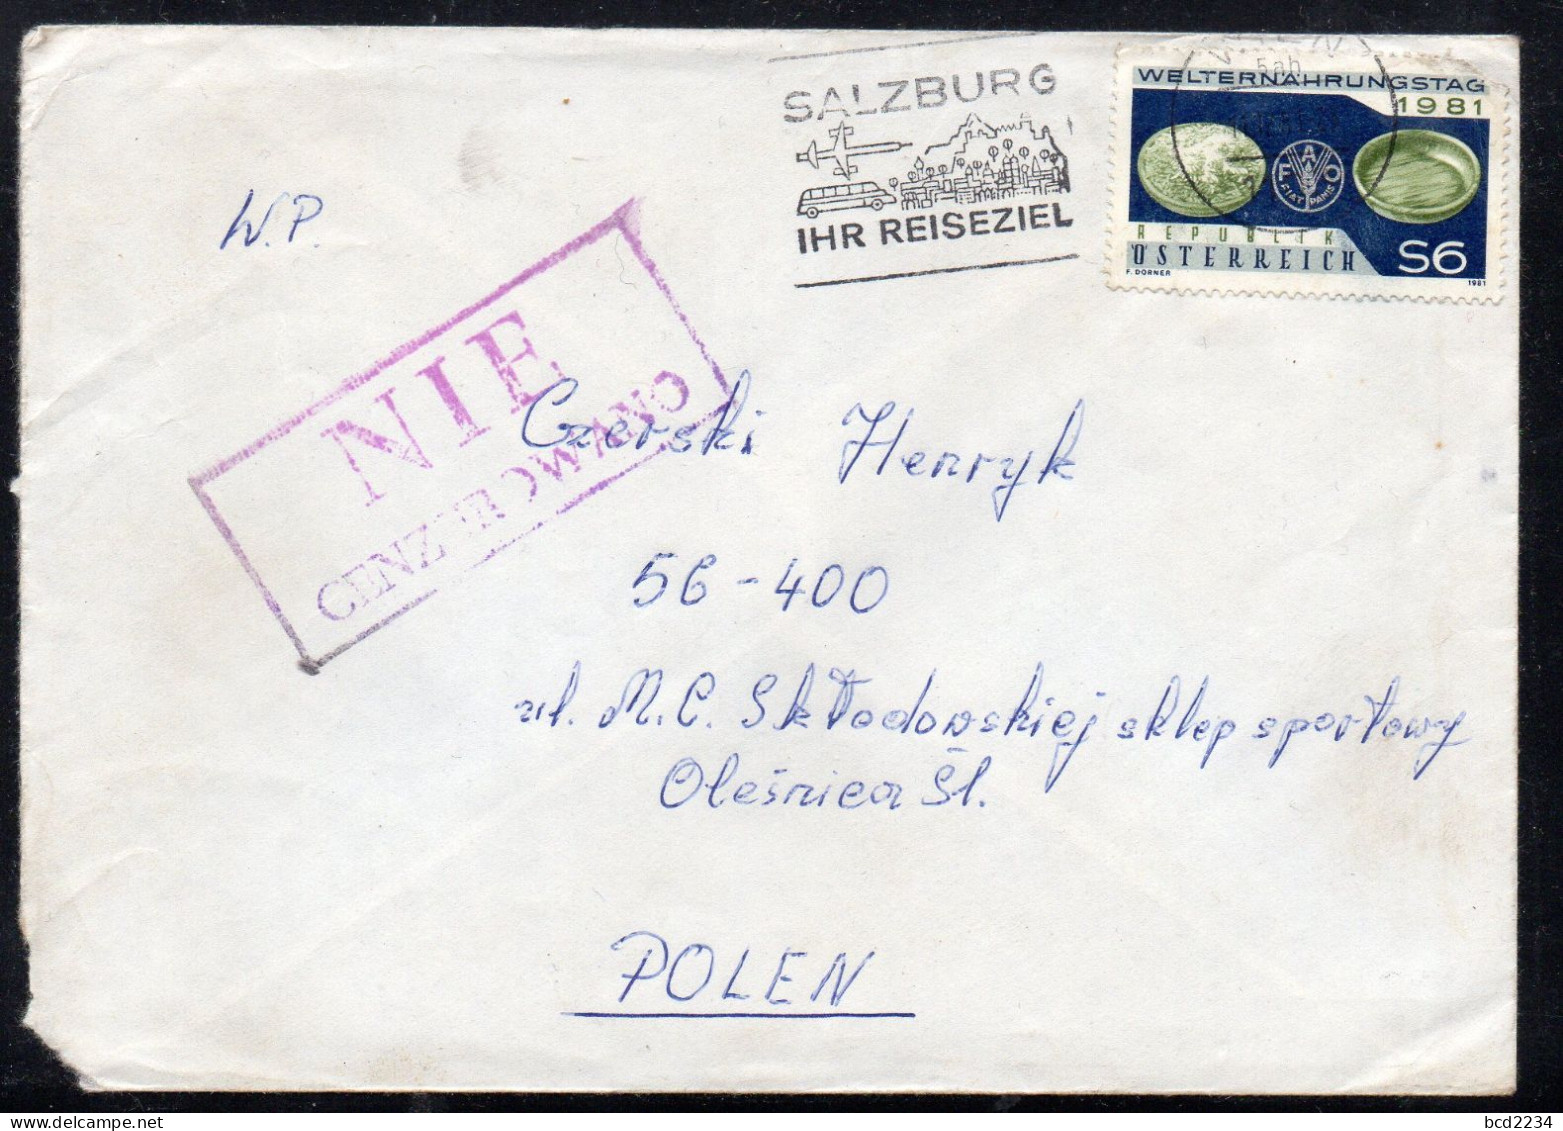 POLAND 1981 SOLIDARITY SOLIDARNOSC PERIOD MARTIAL LAW NIE CENZUROWANO NOT CENSORED MAUVE CACHET AUSTRIA TO OLESNICA - Cartas & Documentos